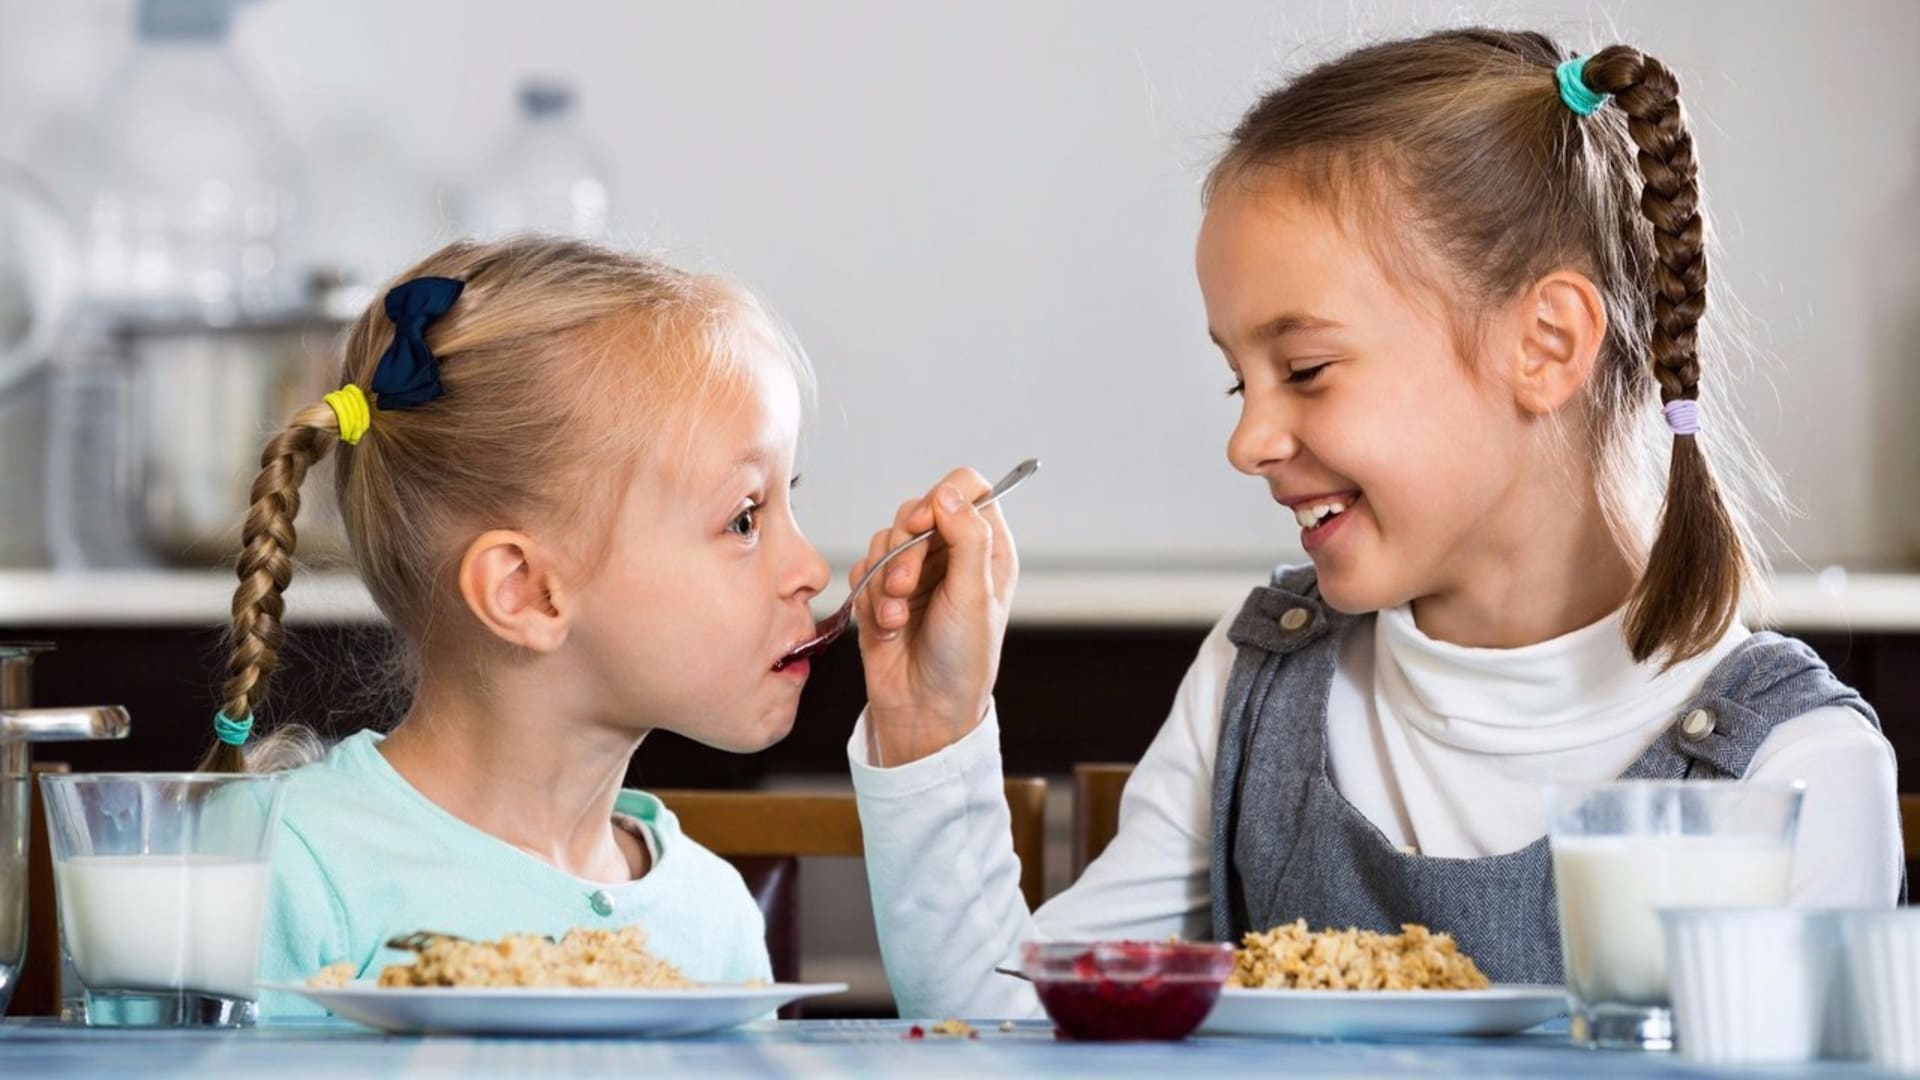 Škola se blíží. Jak dětem připravit rychlou a zdravou snídani?